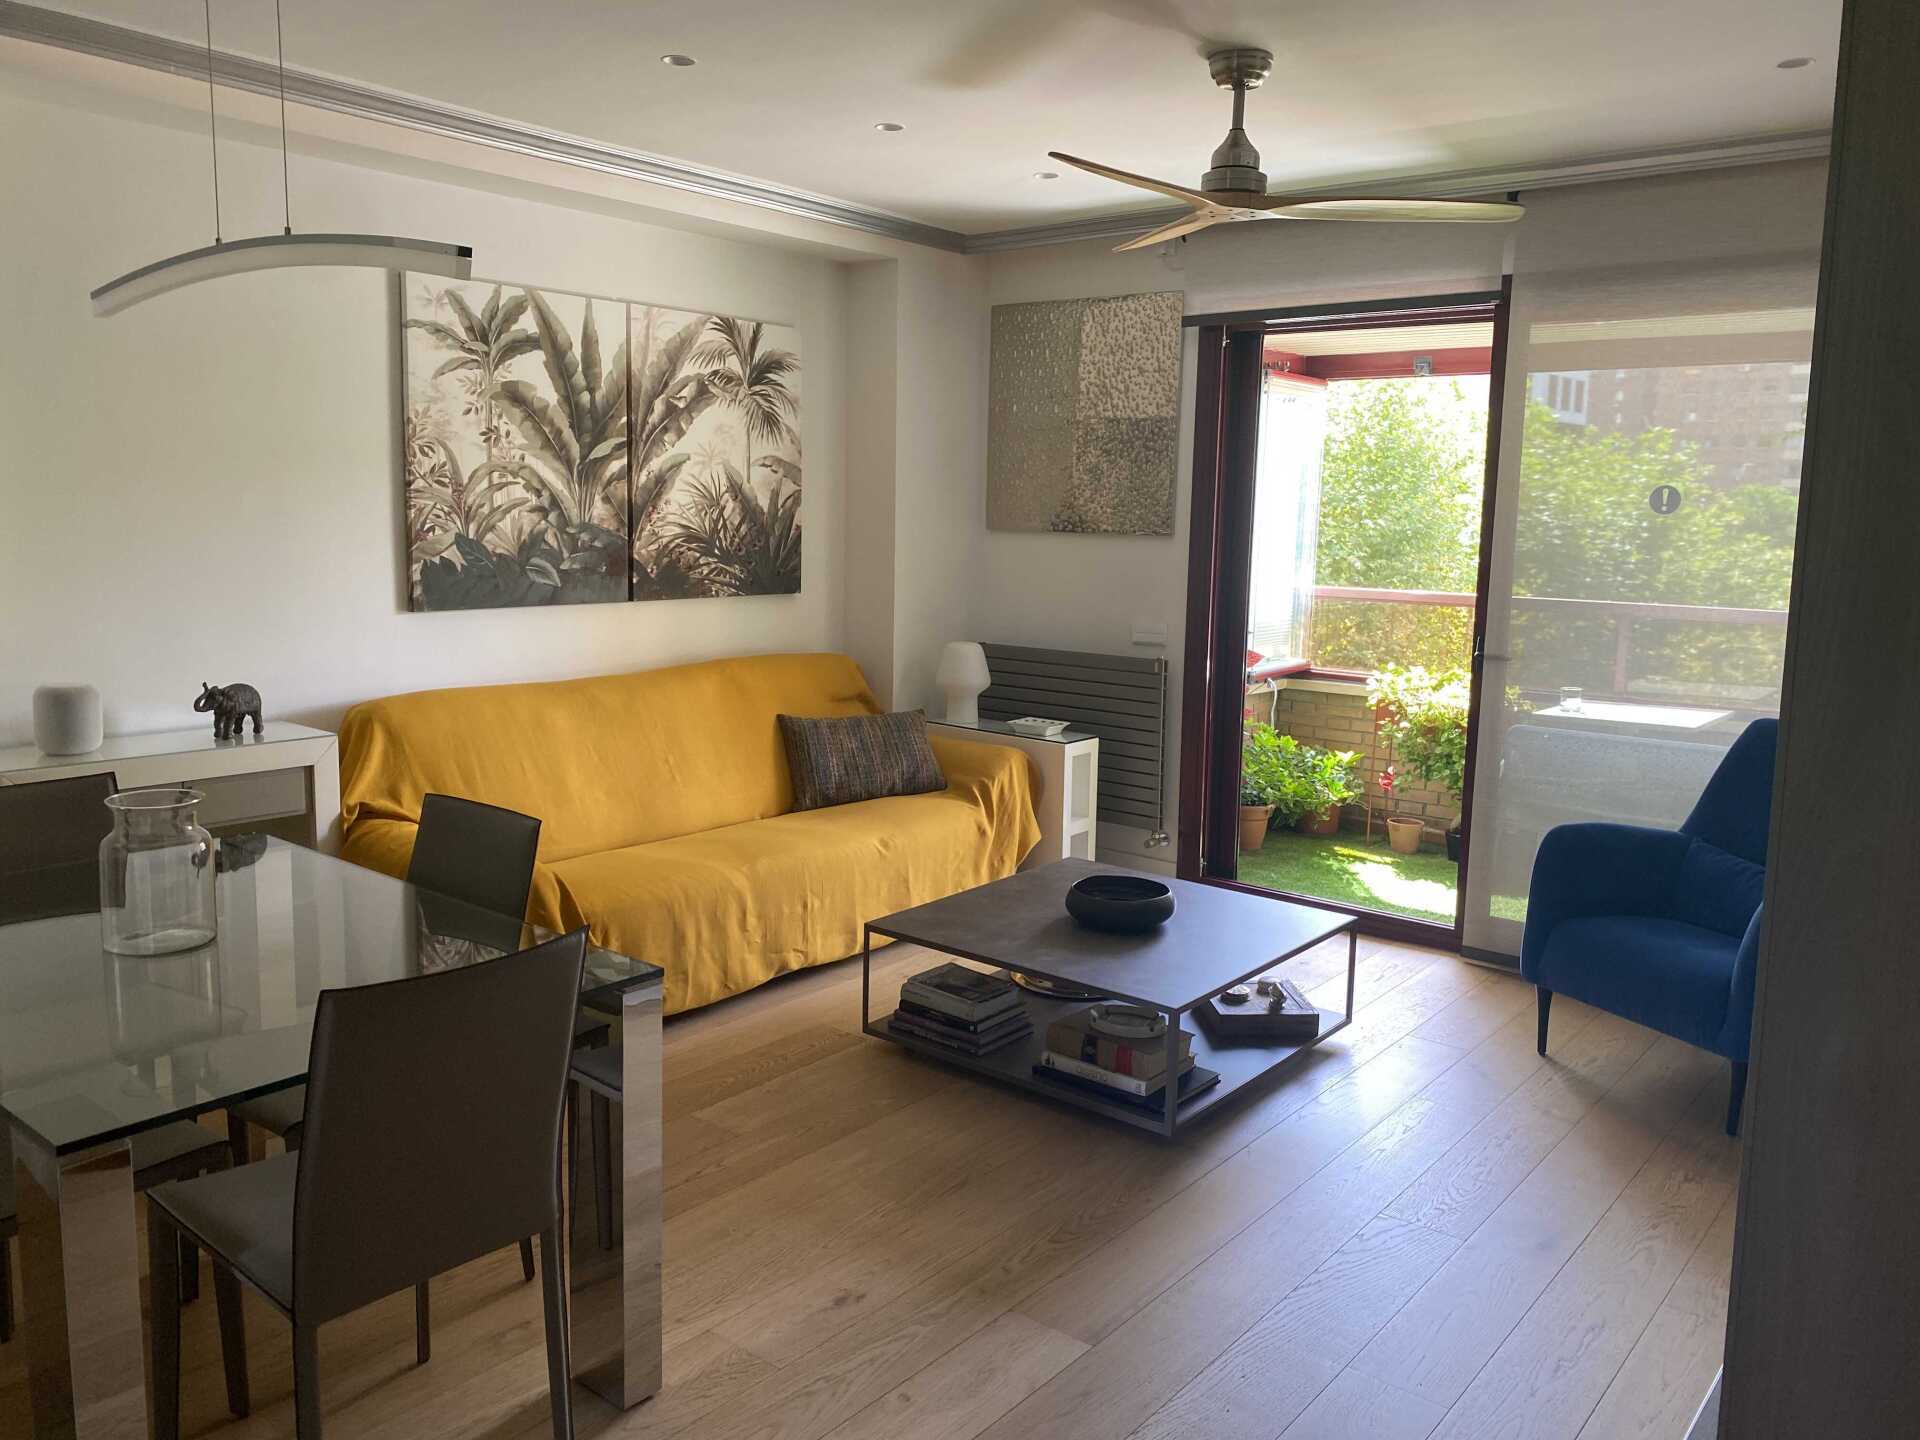 Una sala de estar con un sofá amarillo, una mesa, sillas y un ventilador de techo.